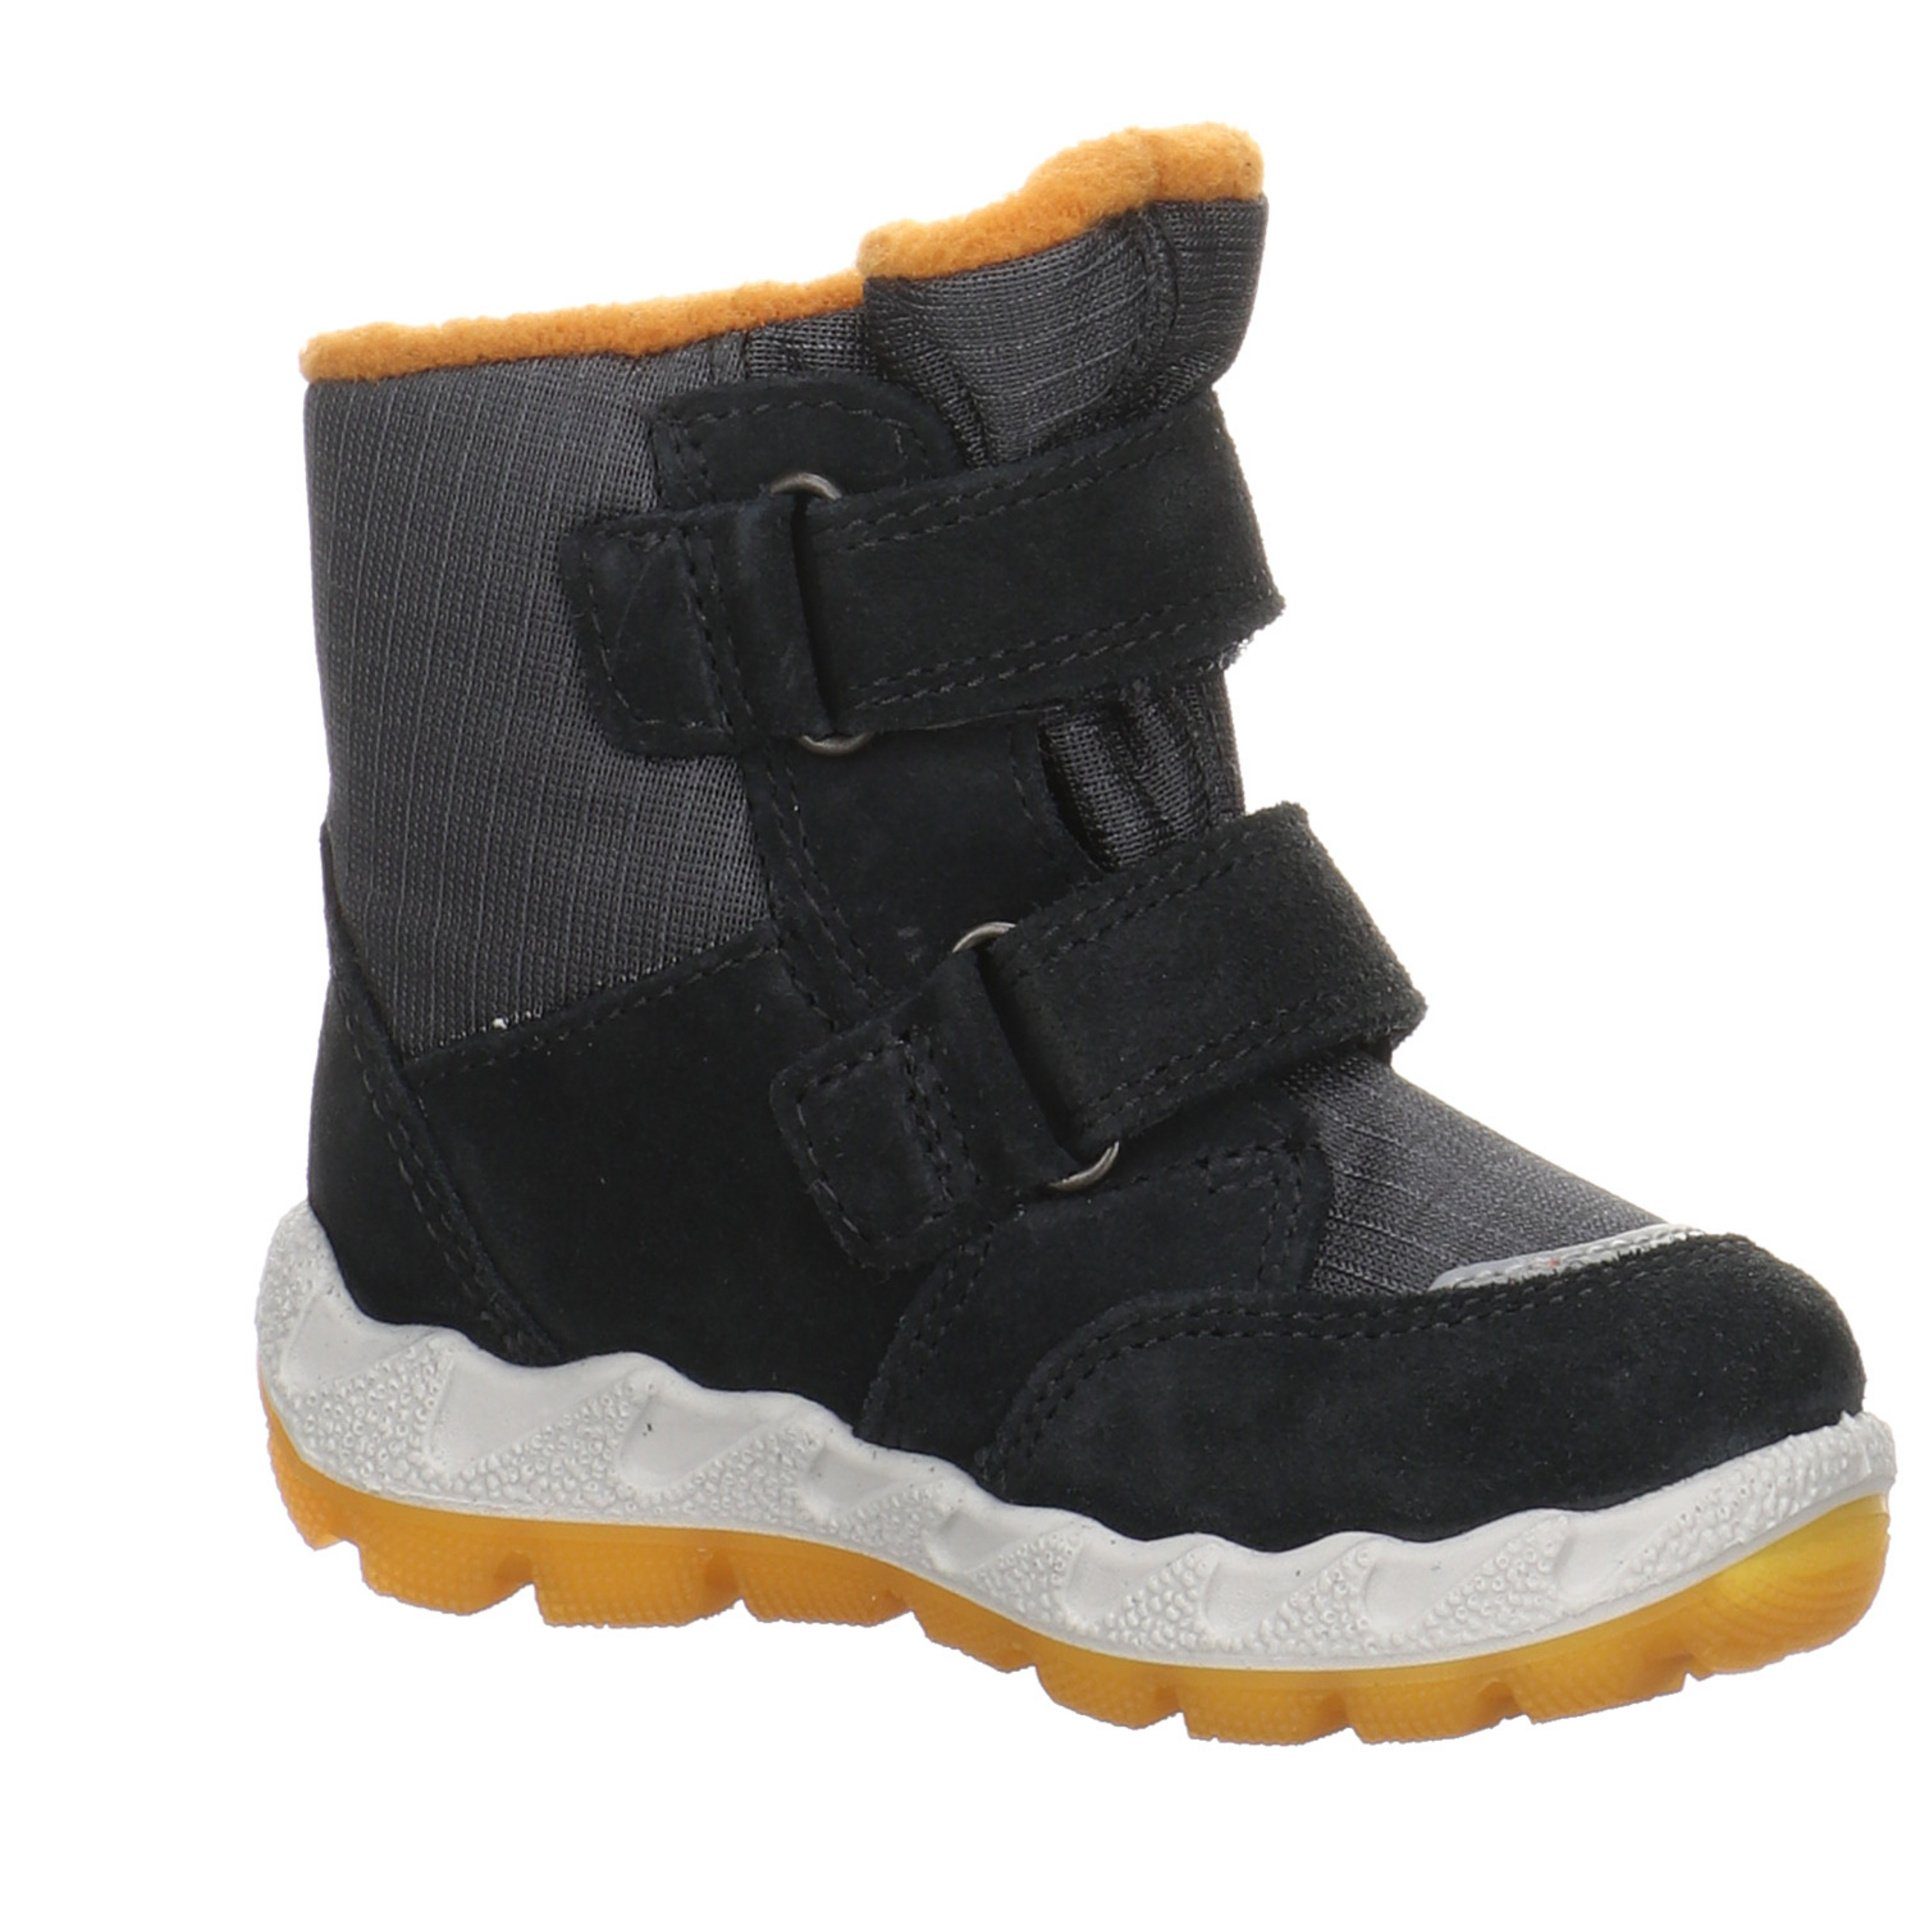 Superfit Baby Lauflernschuhe Boots Leder-/Textilkombination Lauflernschuh grau gelb Icebird Krabbelschuhe